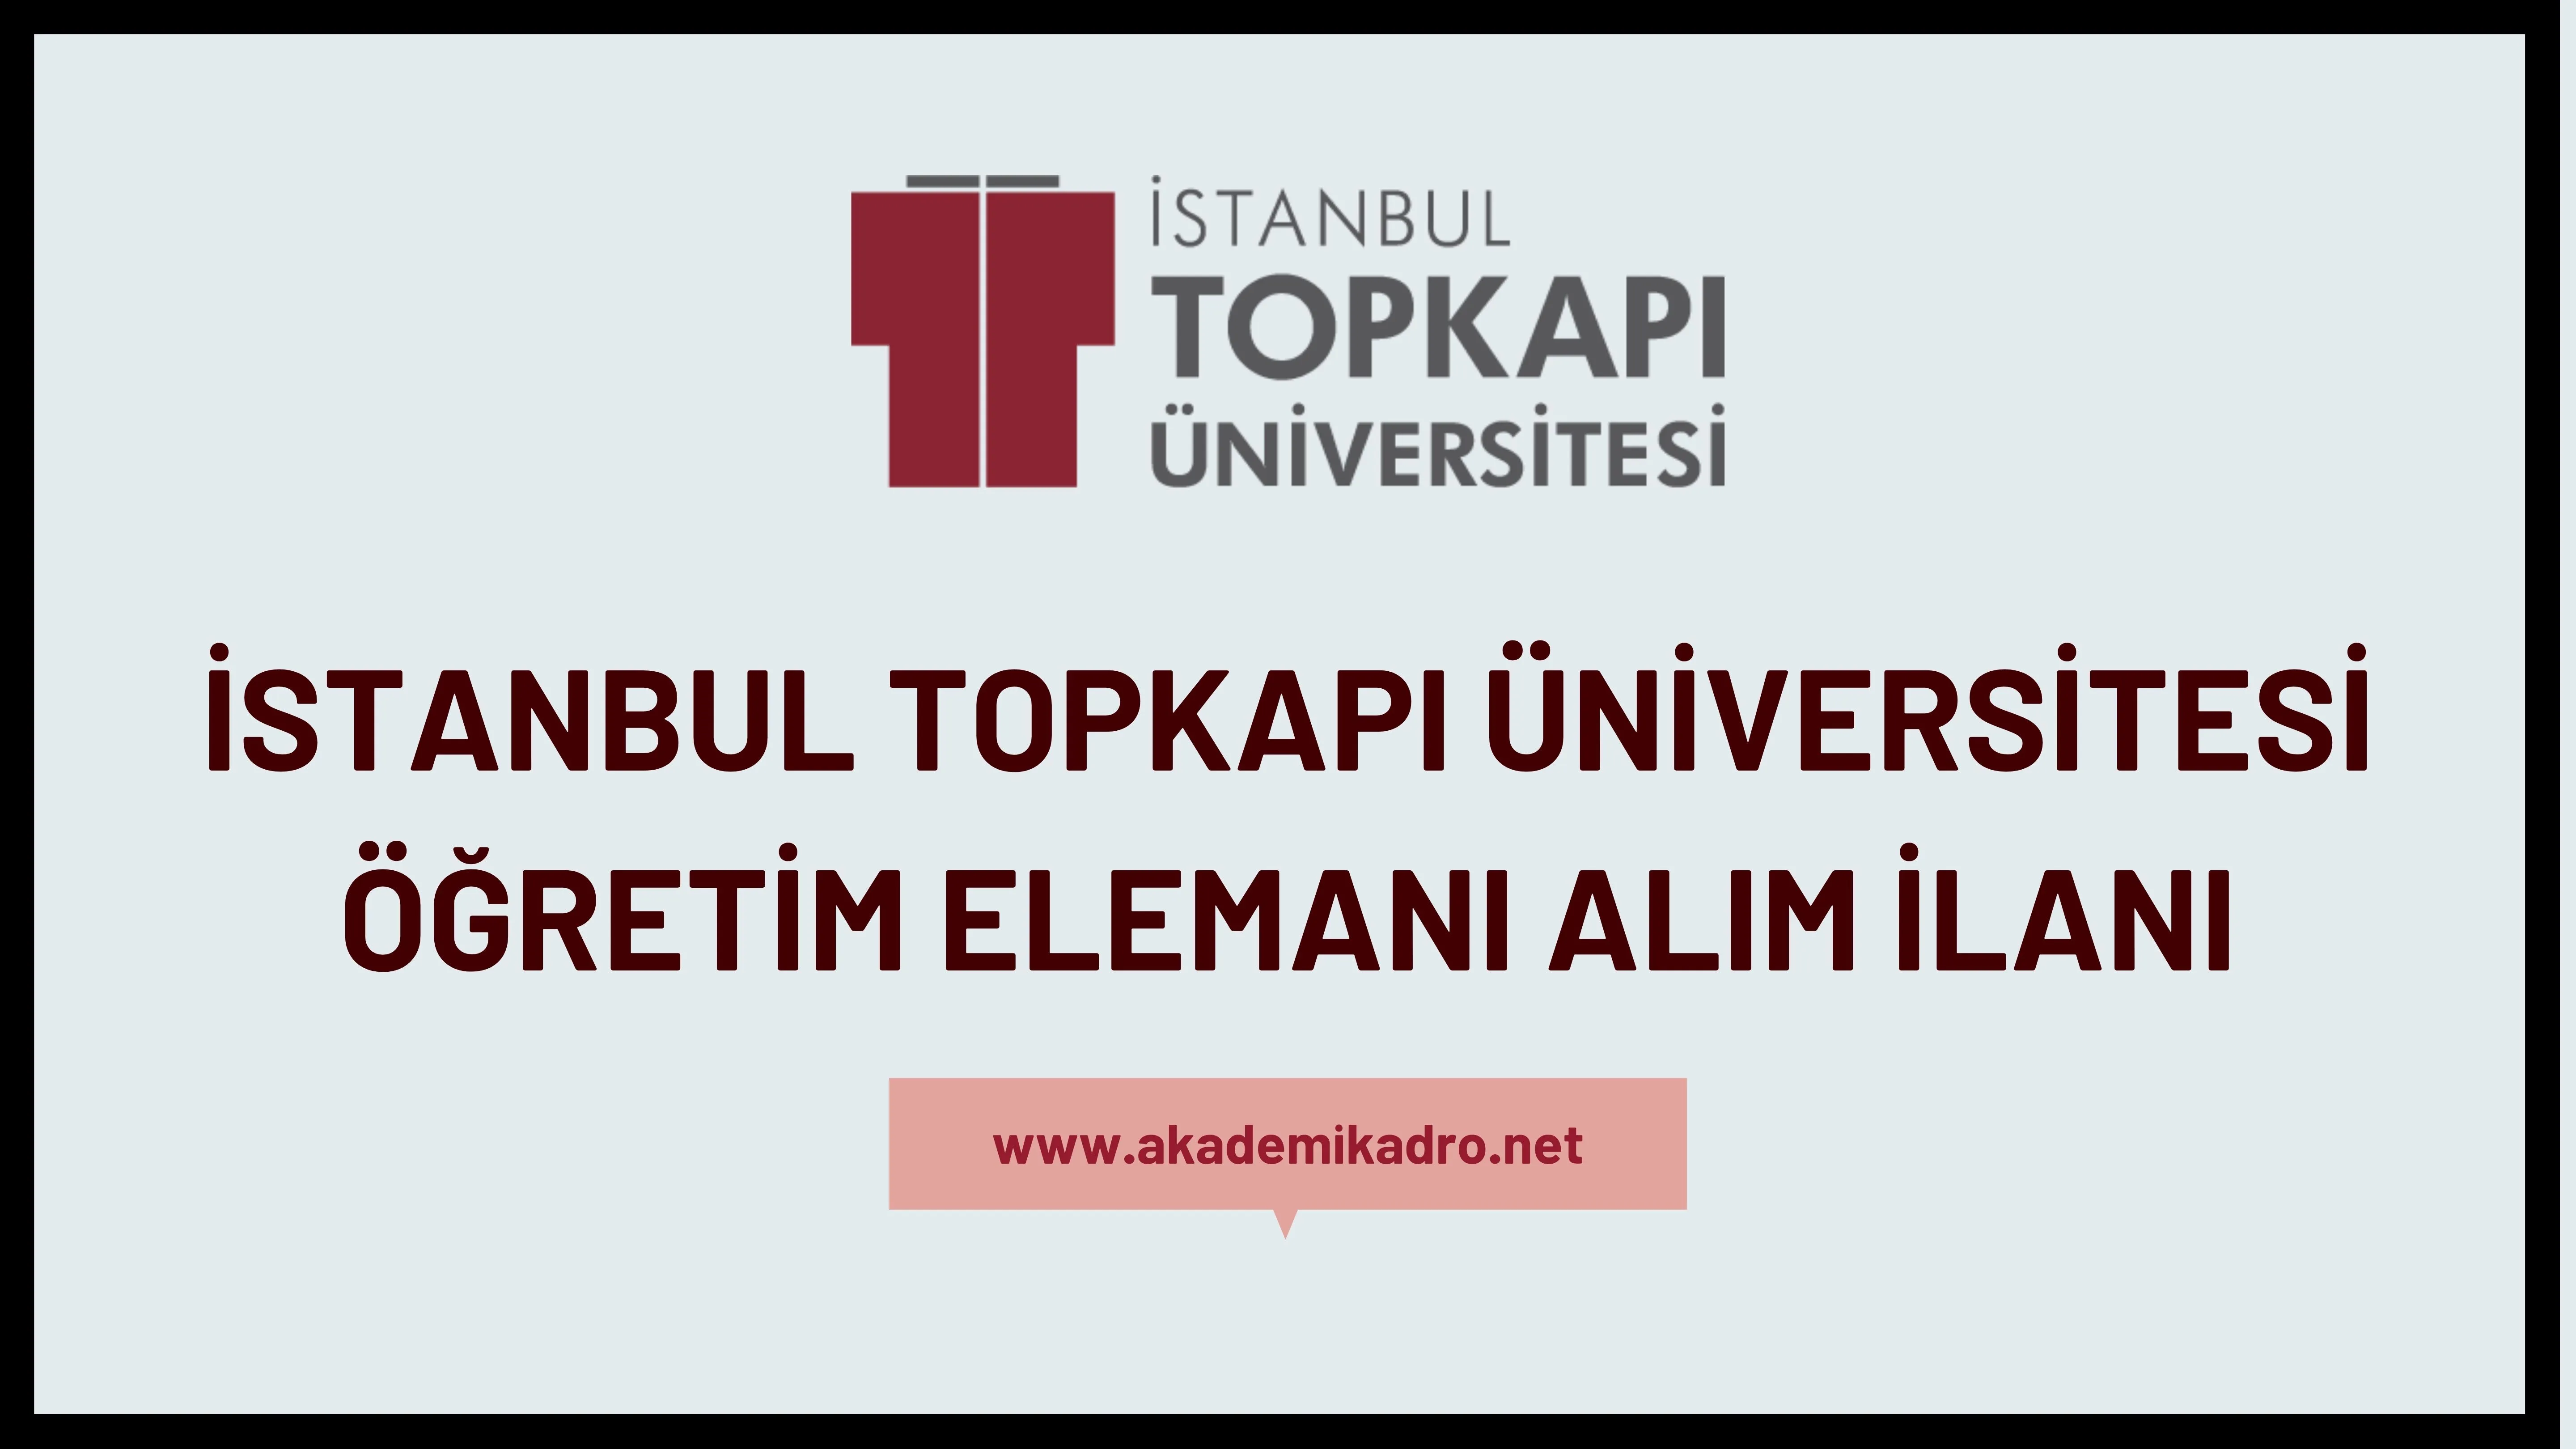 İstanbul Topkapı Üniversitesi 7 Araştırma görevlisi,9 Öğretim görevlisi ve 21 Öğretim üyesi alacak.